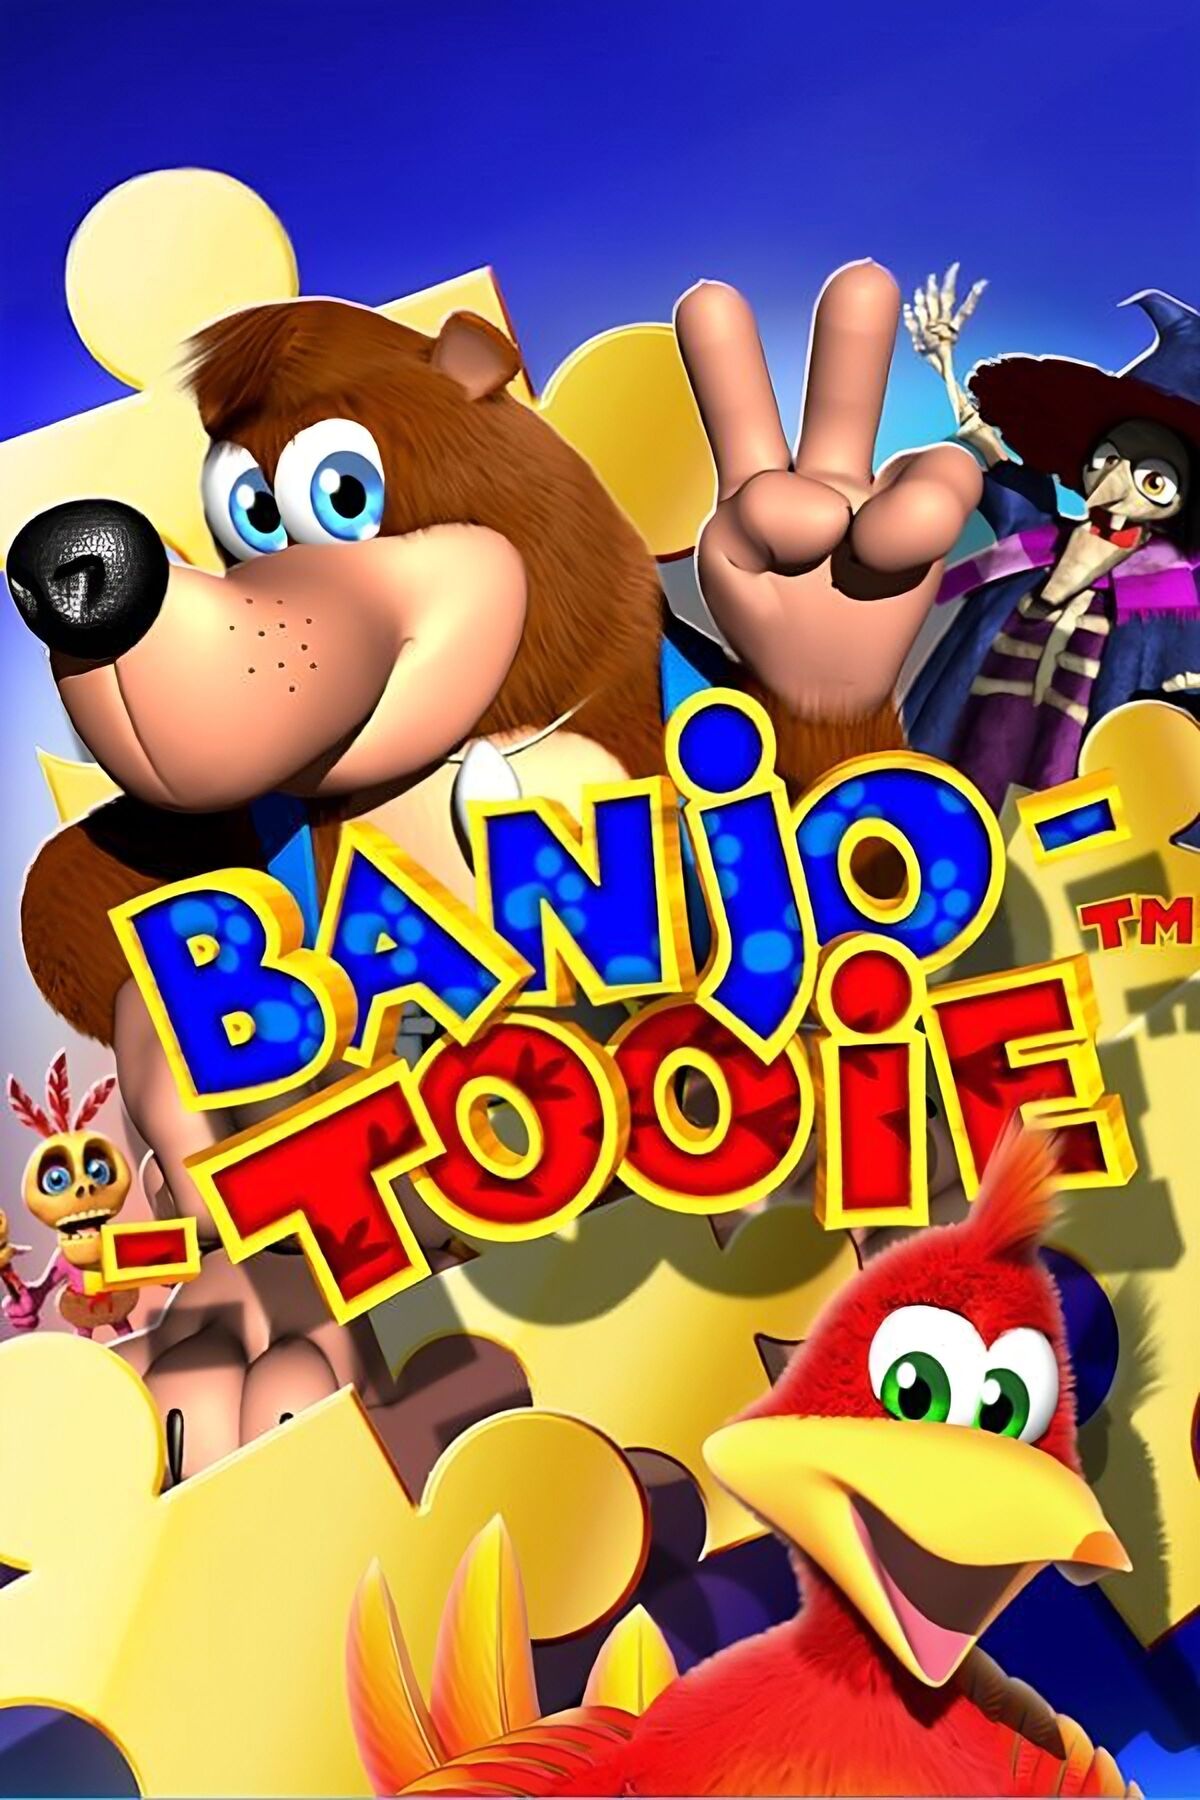 Banjo-Kazooie [100] 100% Xbox 360 Longplay 